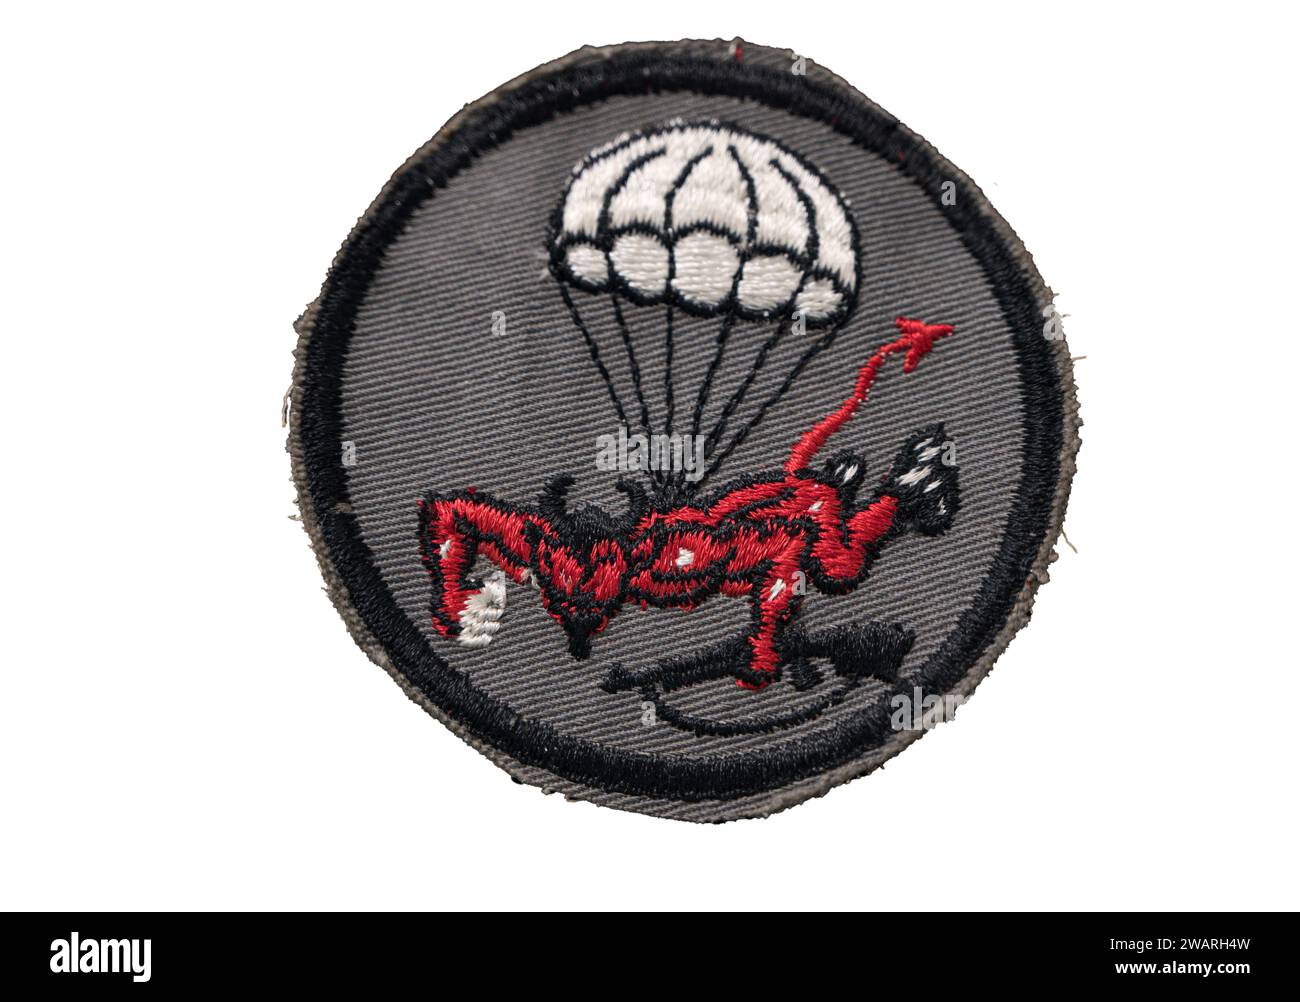 Patch de poche du 508th parachute Infantry Regiment sur fond blanc Banque D'Images